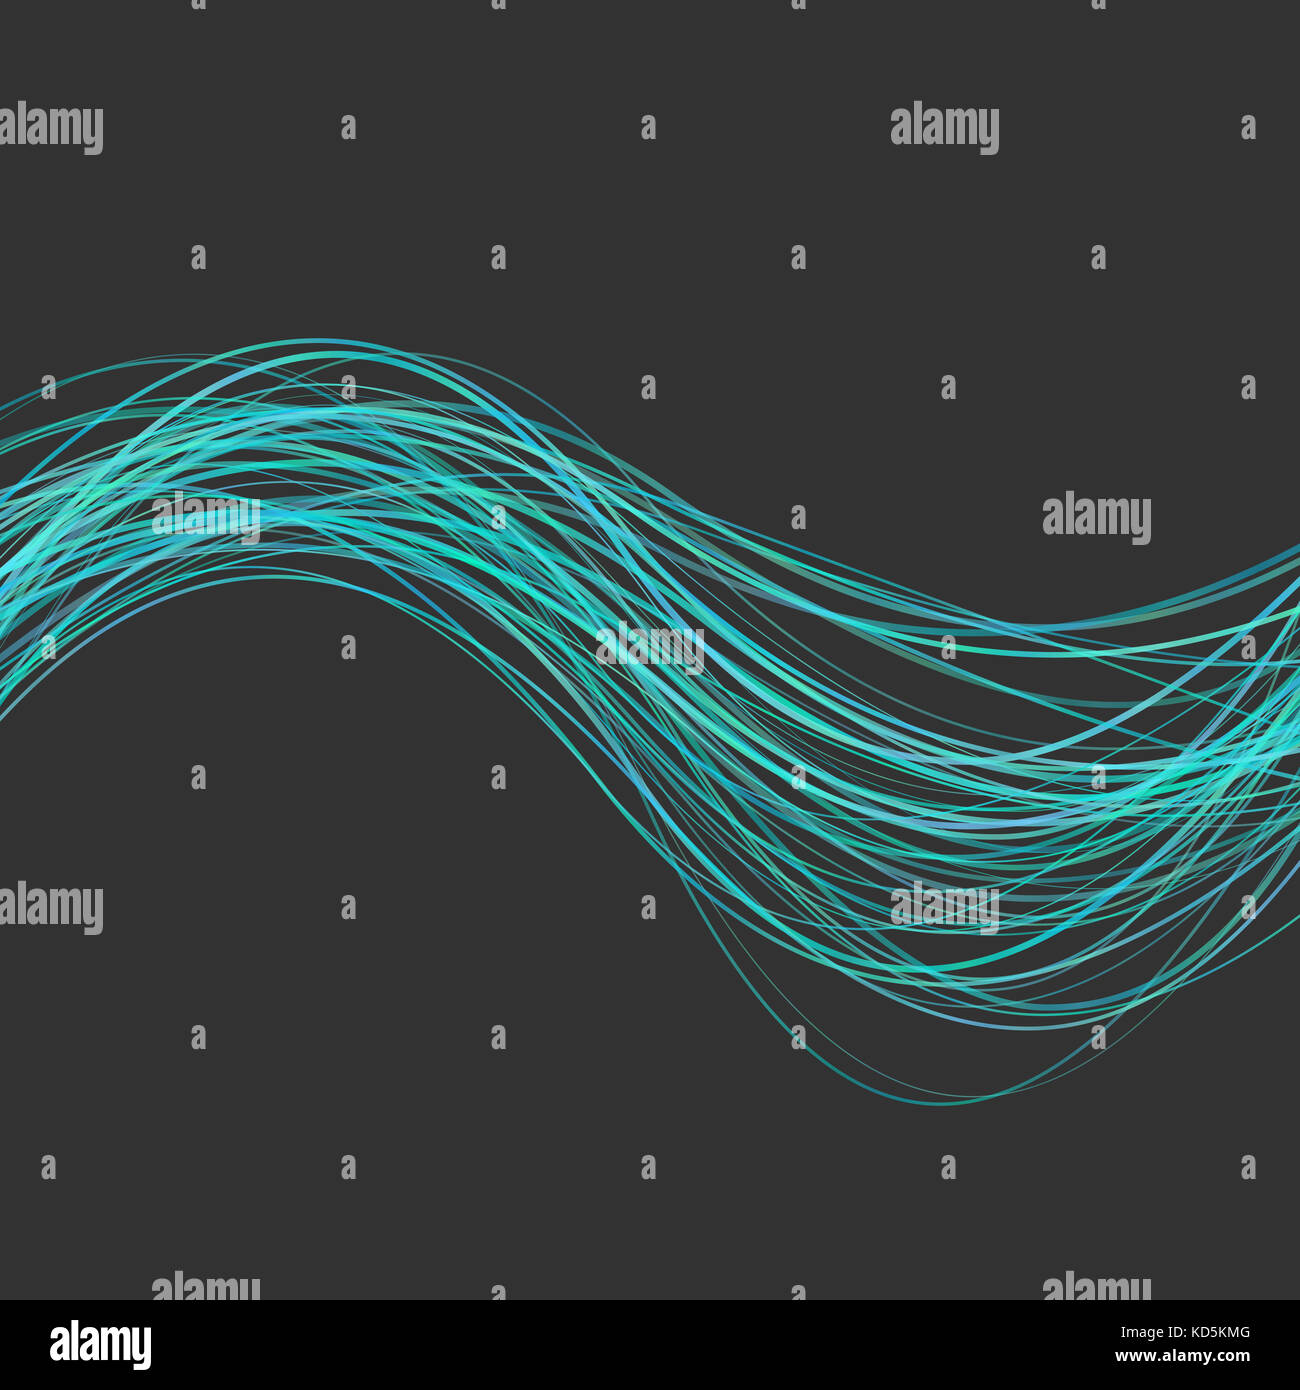 Dynamische abstrakte Wave line Hintergrund - Darstellung von gekrümmten Streifen in Hellblau Töne Stockfoto